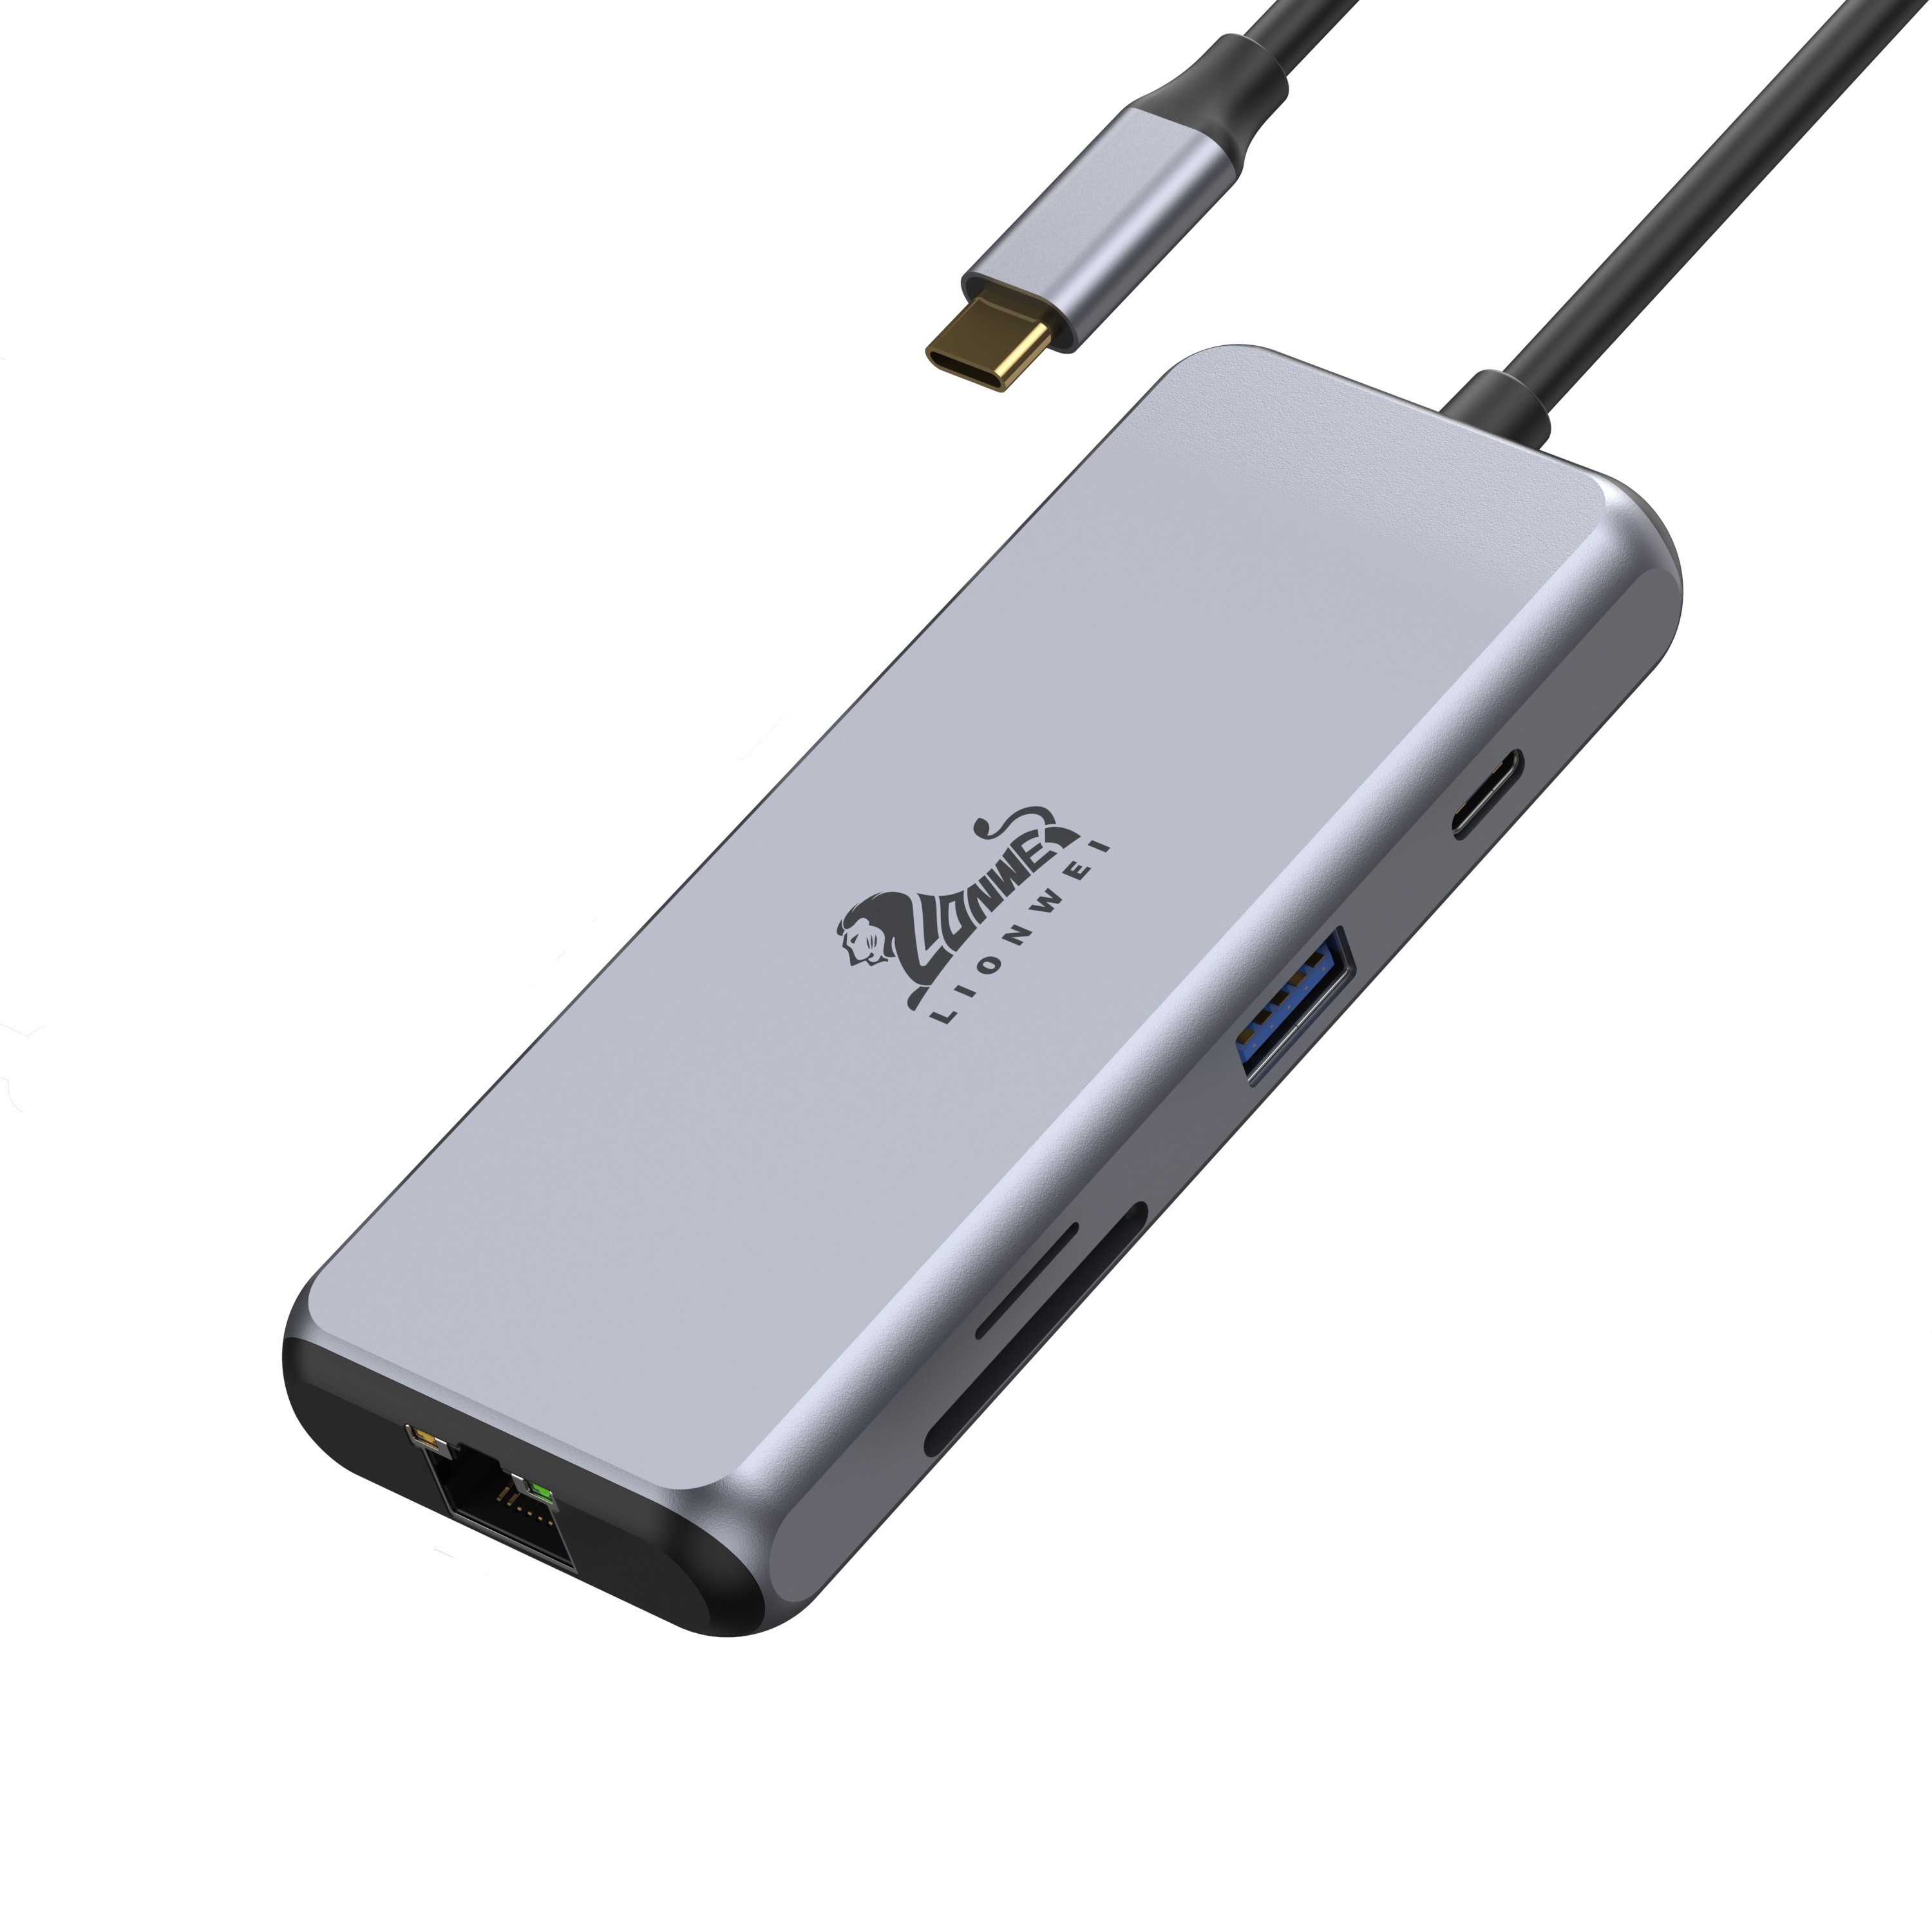 Mini station d'accueil USB 3.0 universelle pour PC portable avec HDMI -  Adaptateur NIC USB 3.0 vers GbE